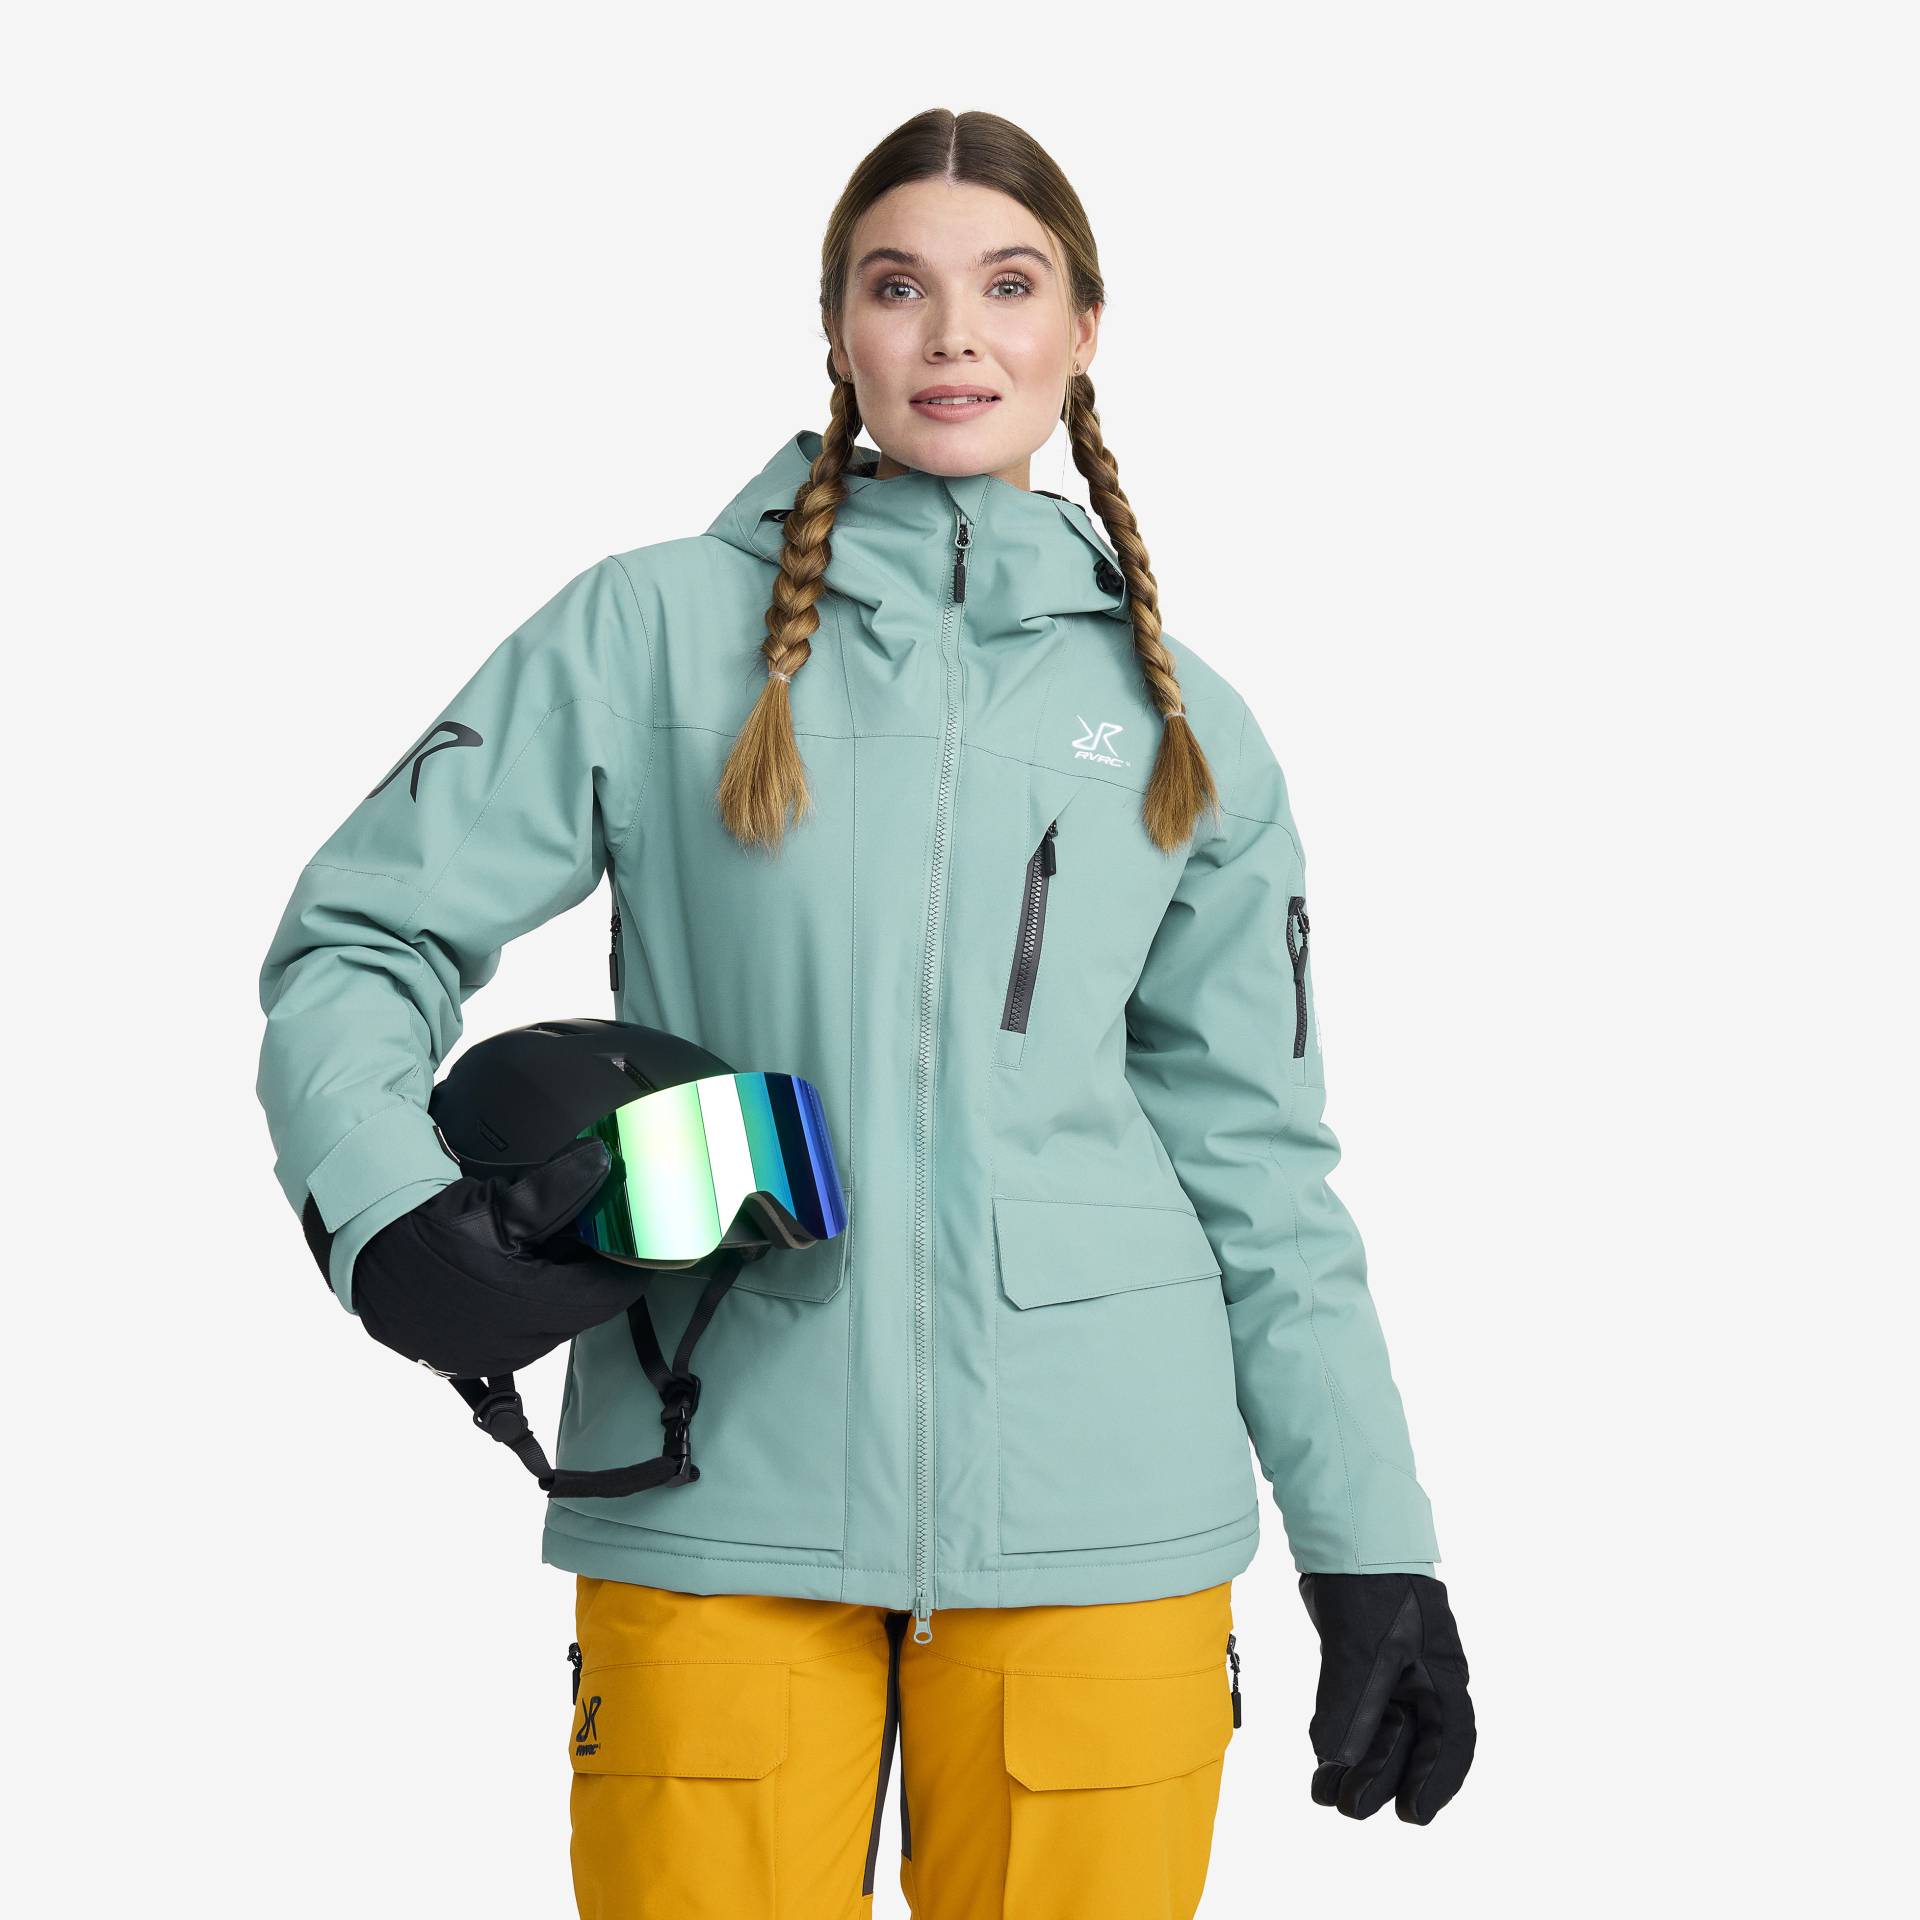 Halo 2L Insulated Ski Jacket Damen Arctic, Größe:XS - Skijacken von RevolutionRace